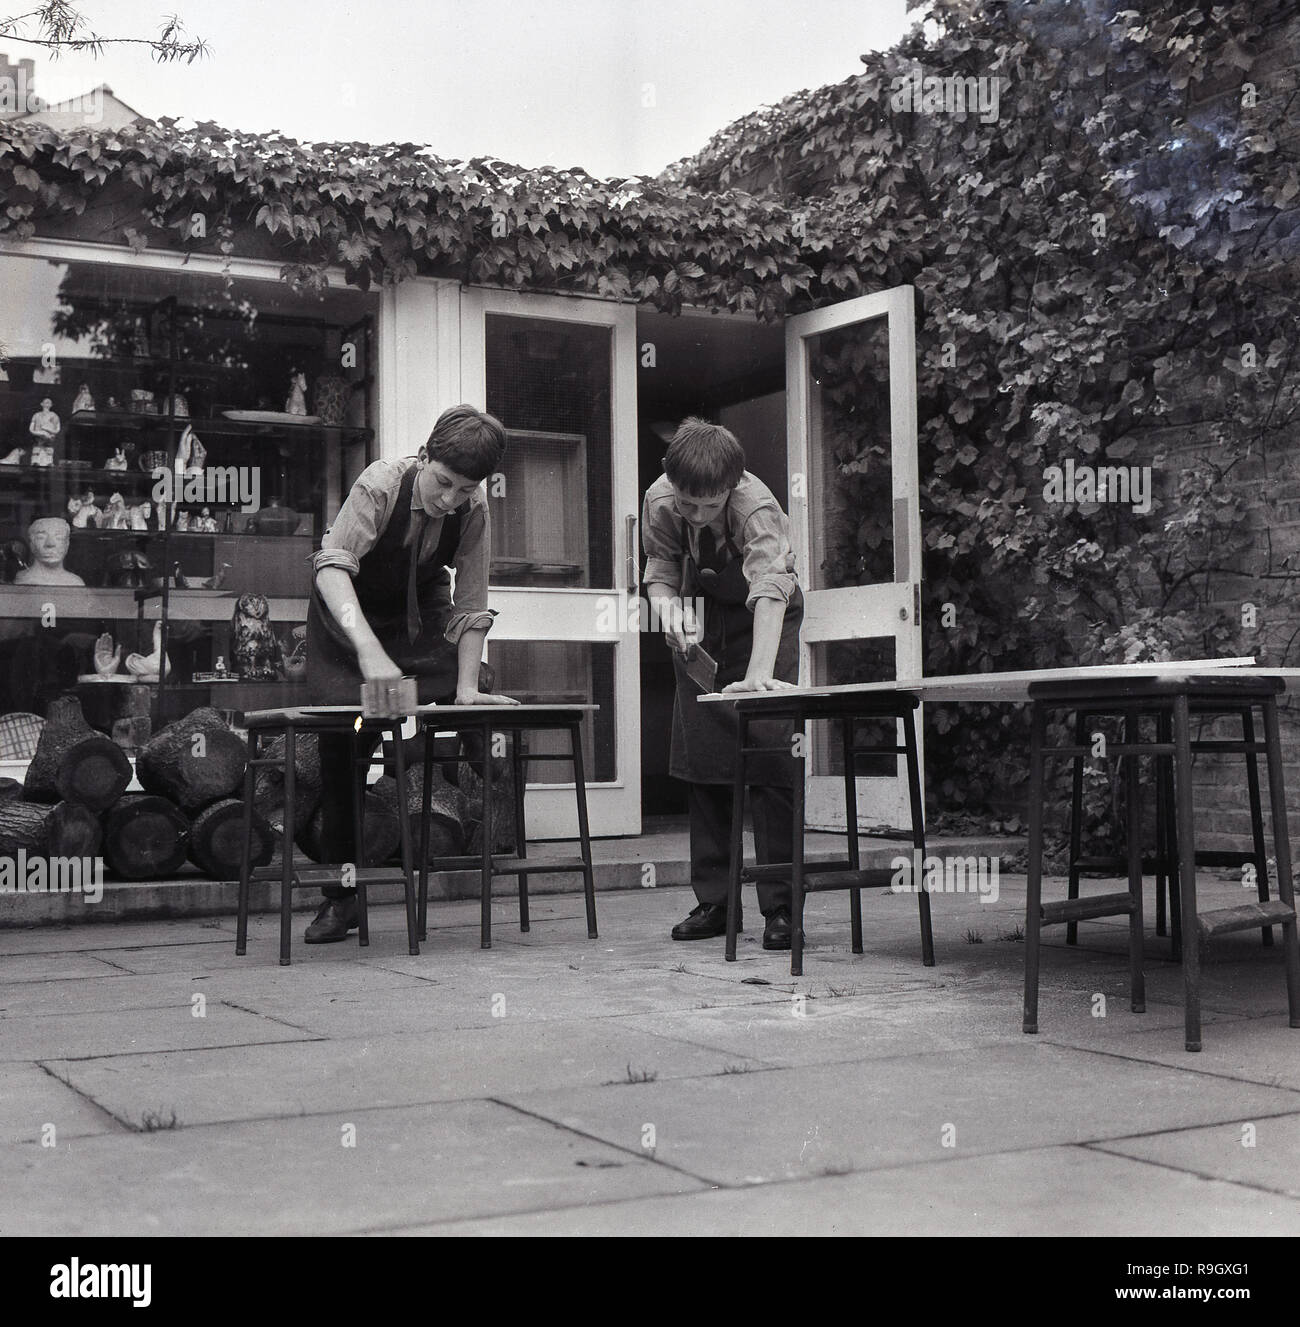 1968, Londra sud,a ragazzi all interno della città Boarding School, Inghilterra, due scolari facendo lavori in legno all'esterno sul patio, Inghilterra, Regno Unito. Foto Stock